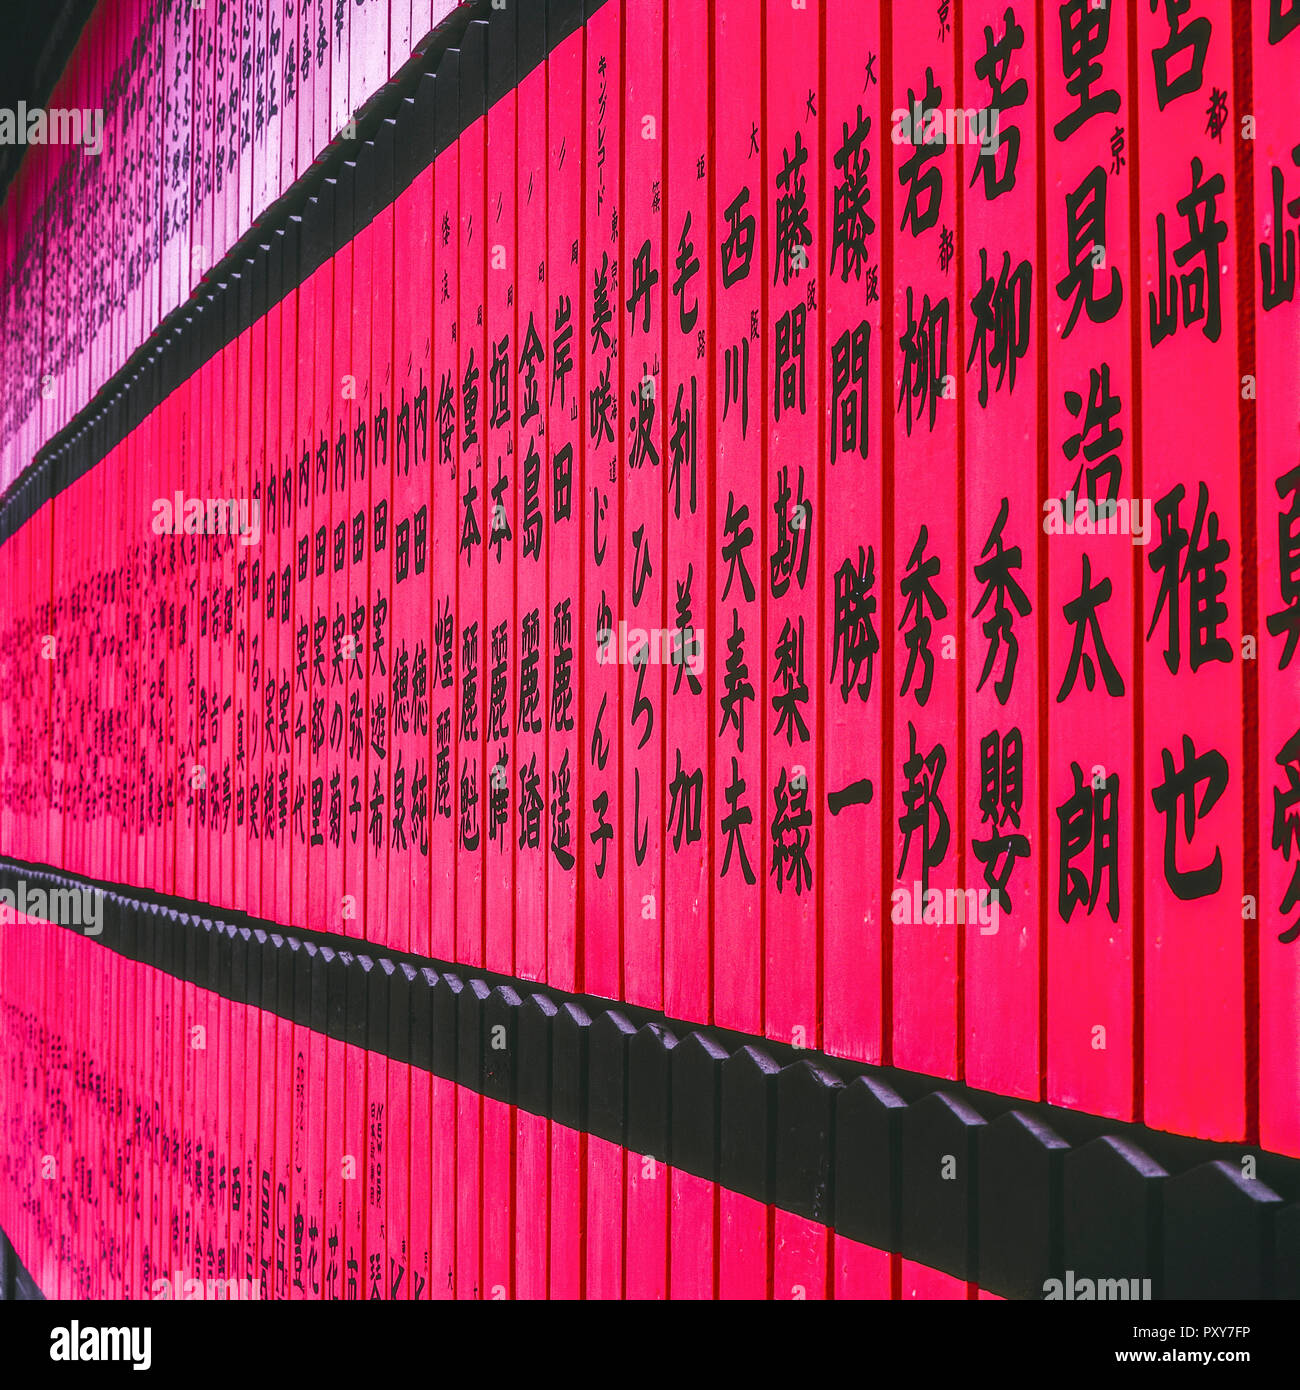 Japanische Schriftzeichen auf roten Holzbrettern Stock Photo